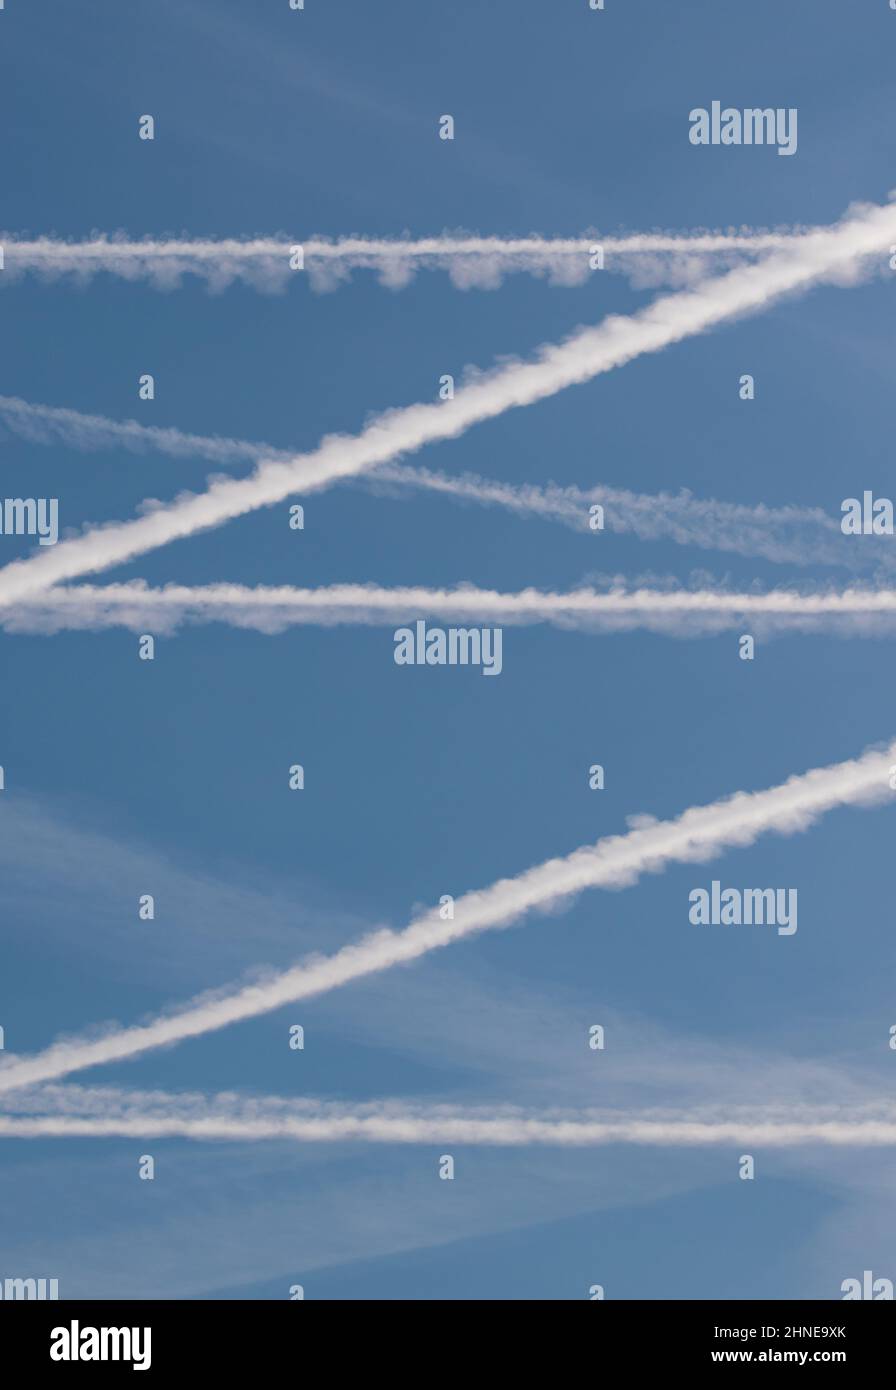 Kehren Sie zur Flugreise zurück, während die Luftverkehrskontrainis weiße Linien über den blauen Himmel ziehen. Ein perfektes Muster wird über den Himmel gezogen, wenn die Covid-Beschränkungen steigen Stockfoto